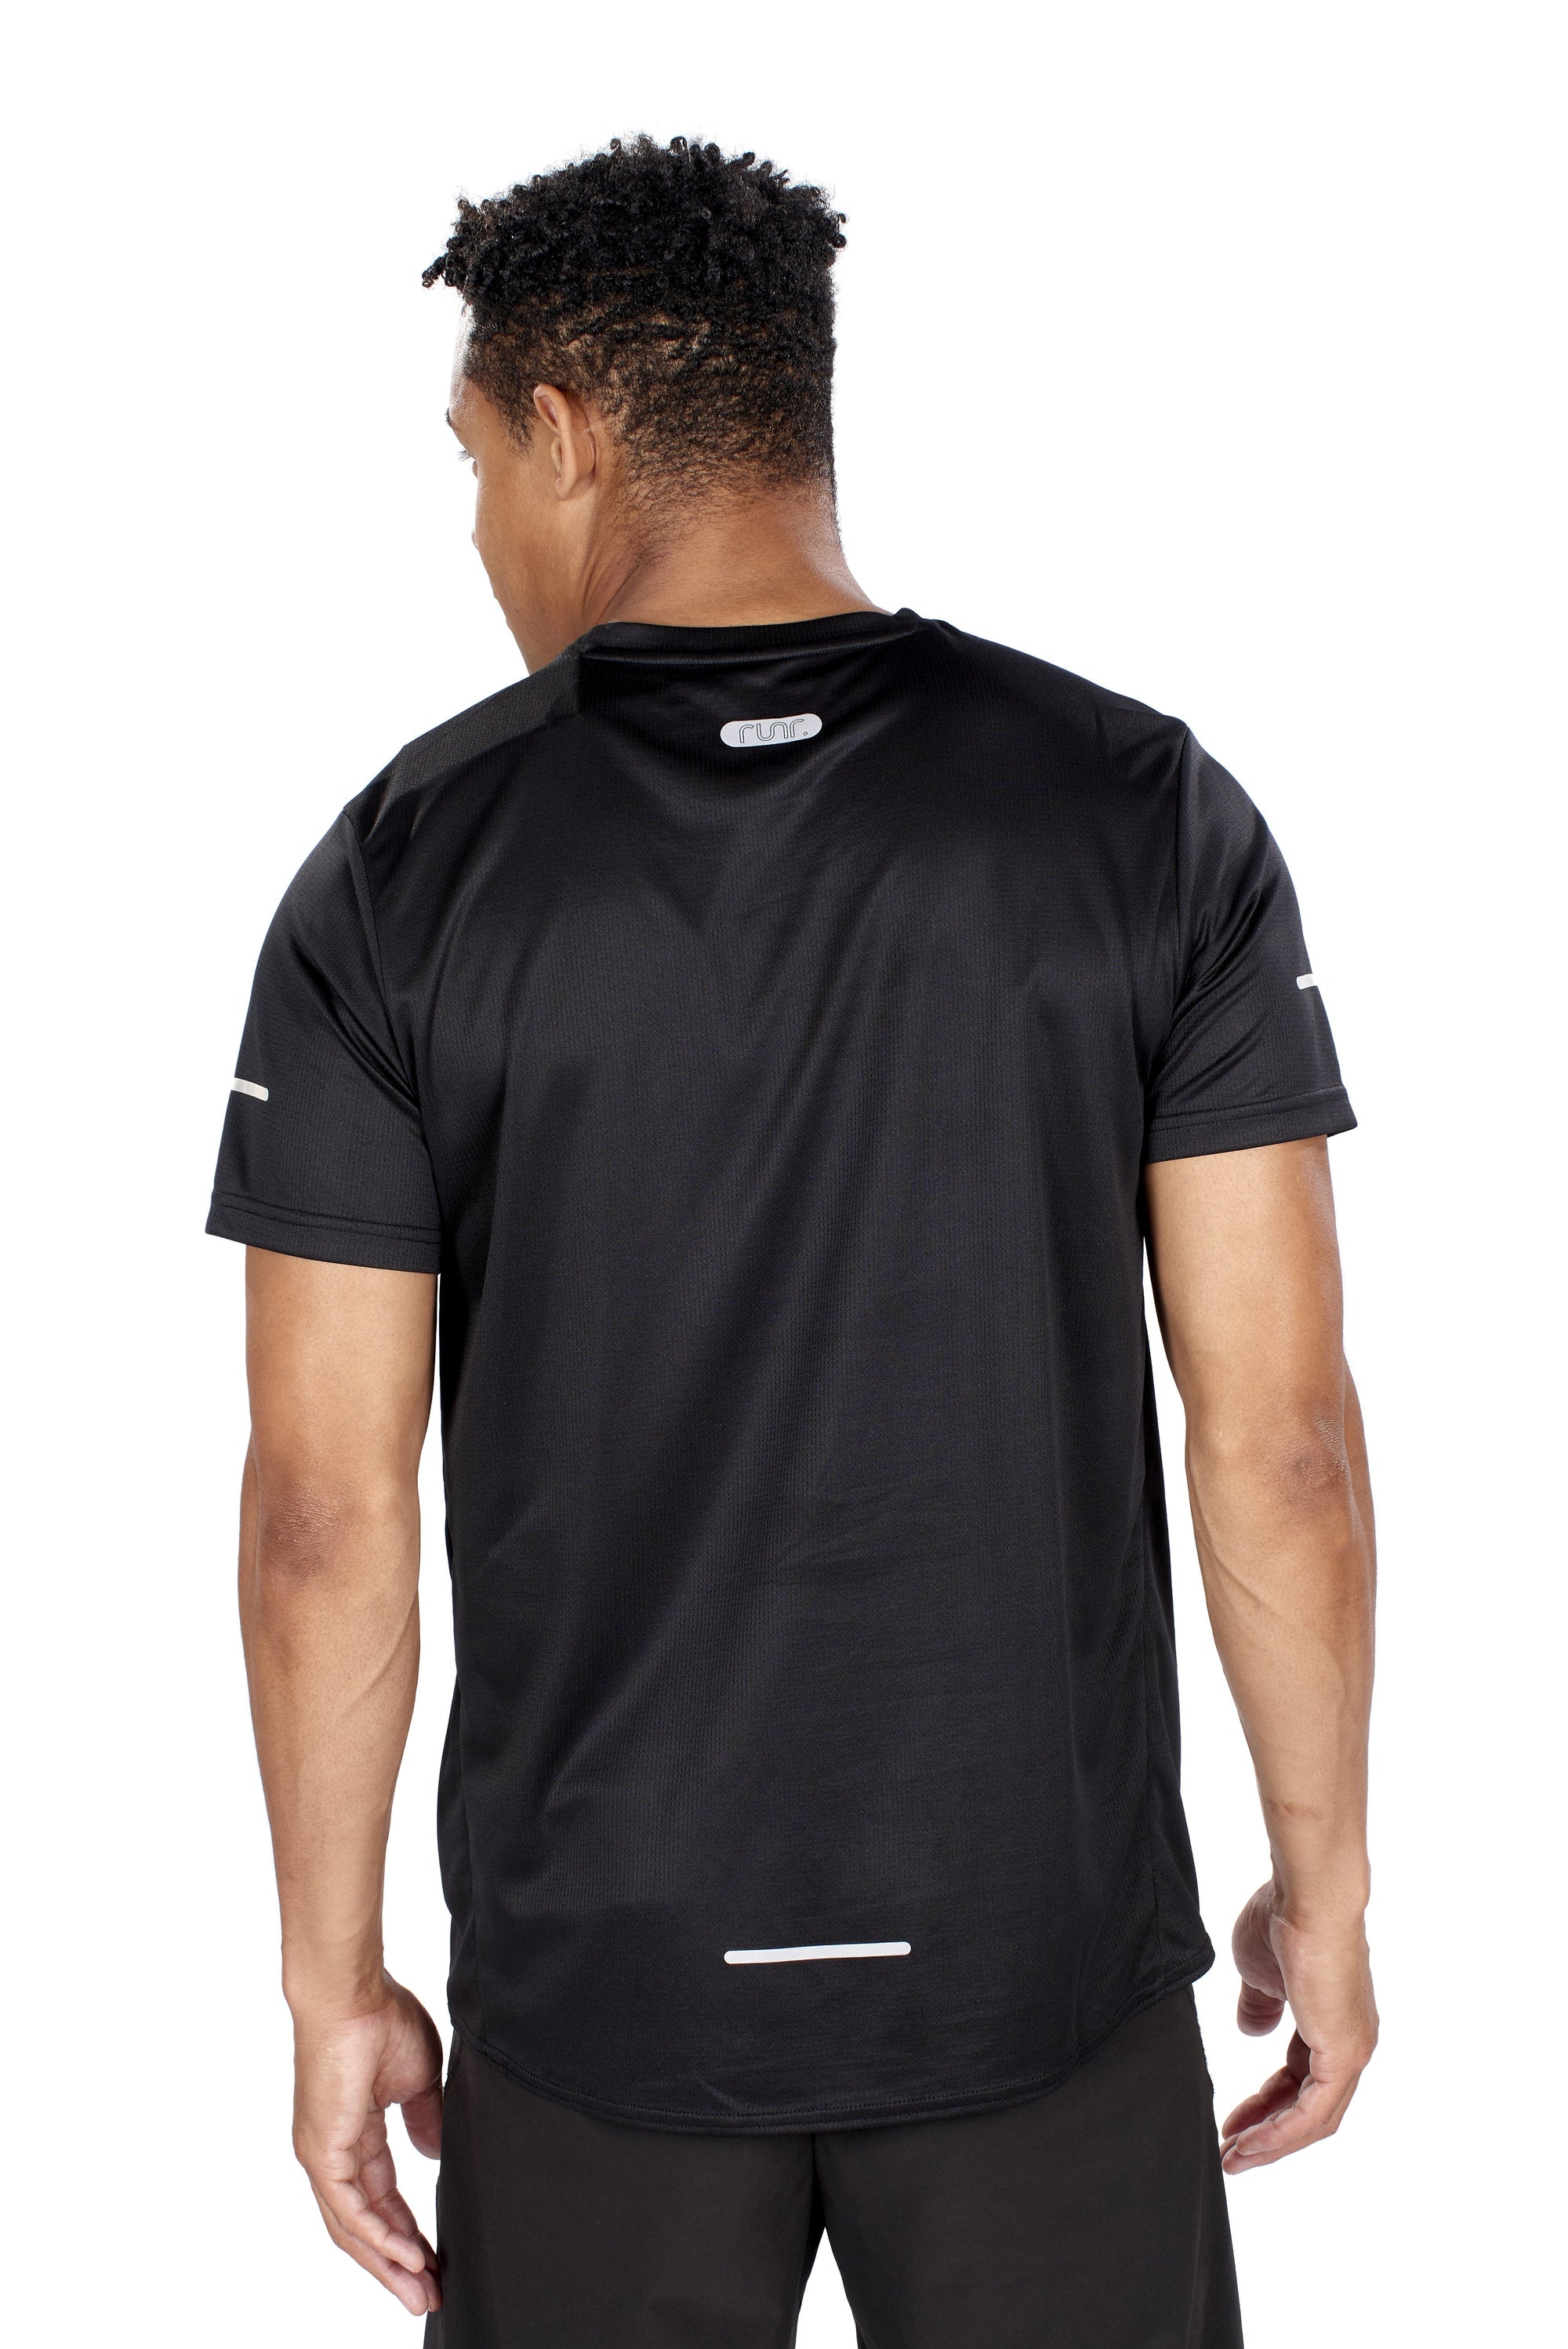 Men's EcoTek Runr Technical T-Shirt - Black